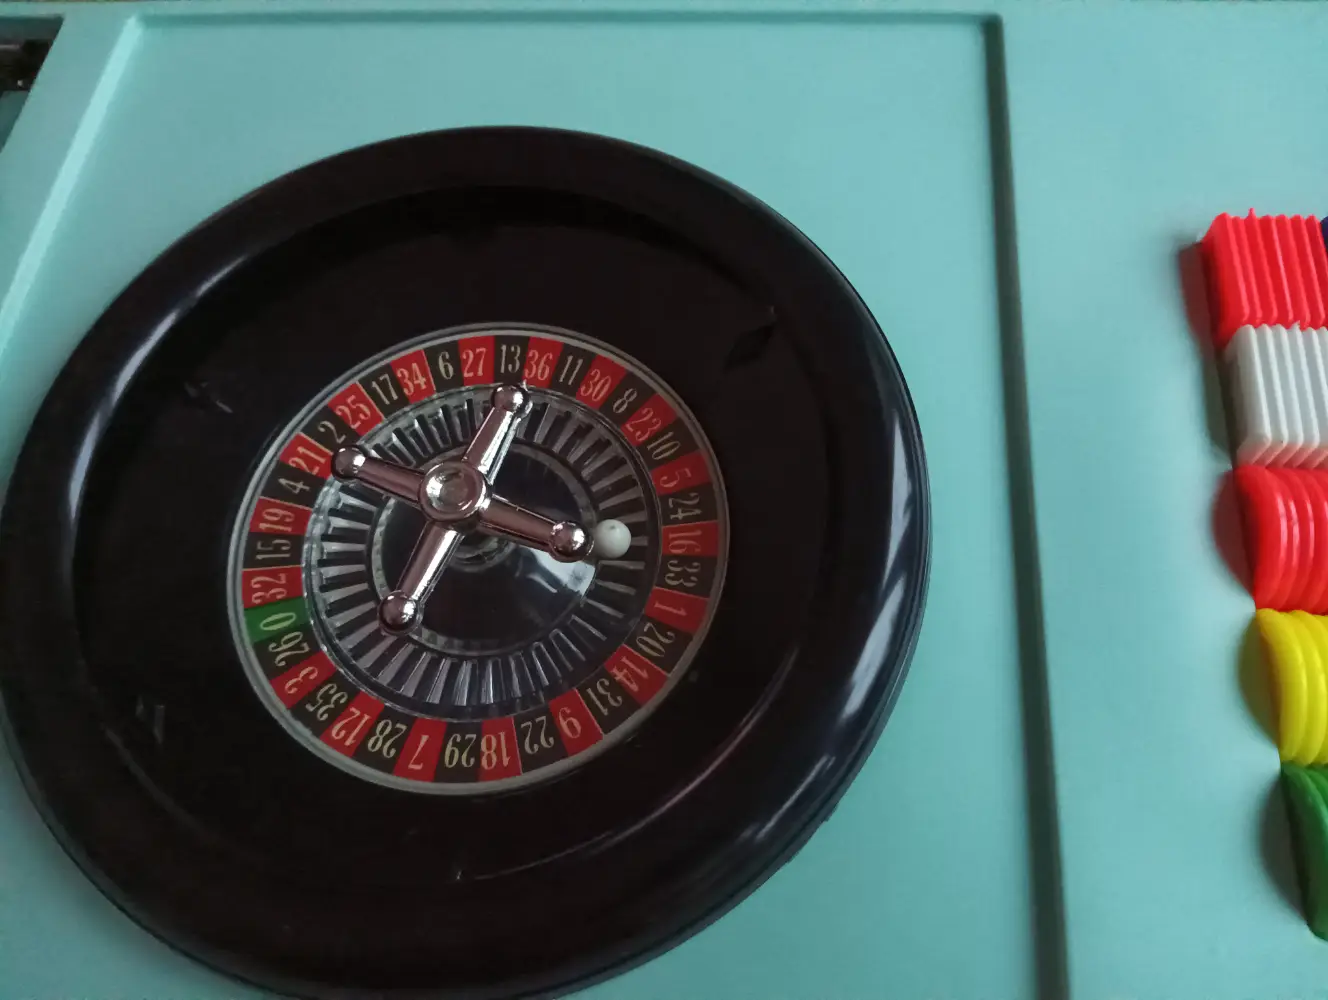 Vintage roulette spil Med rager og plade til